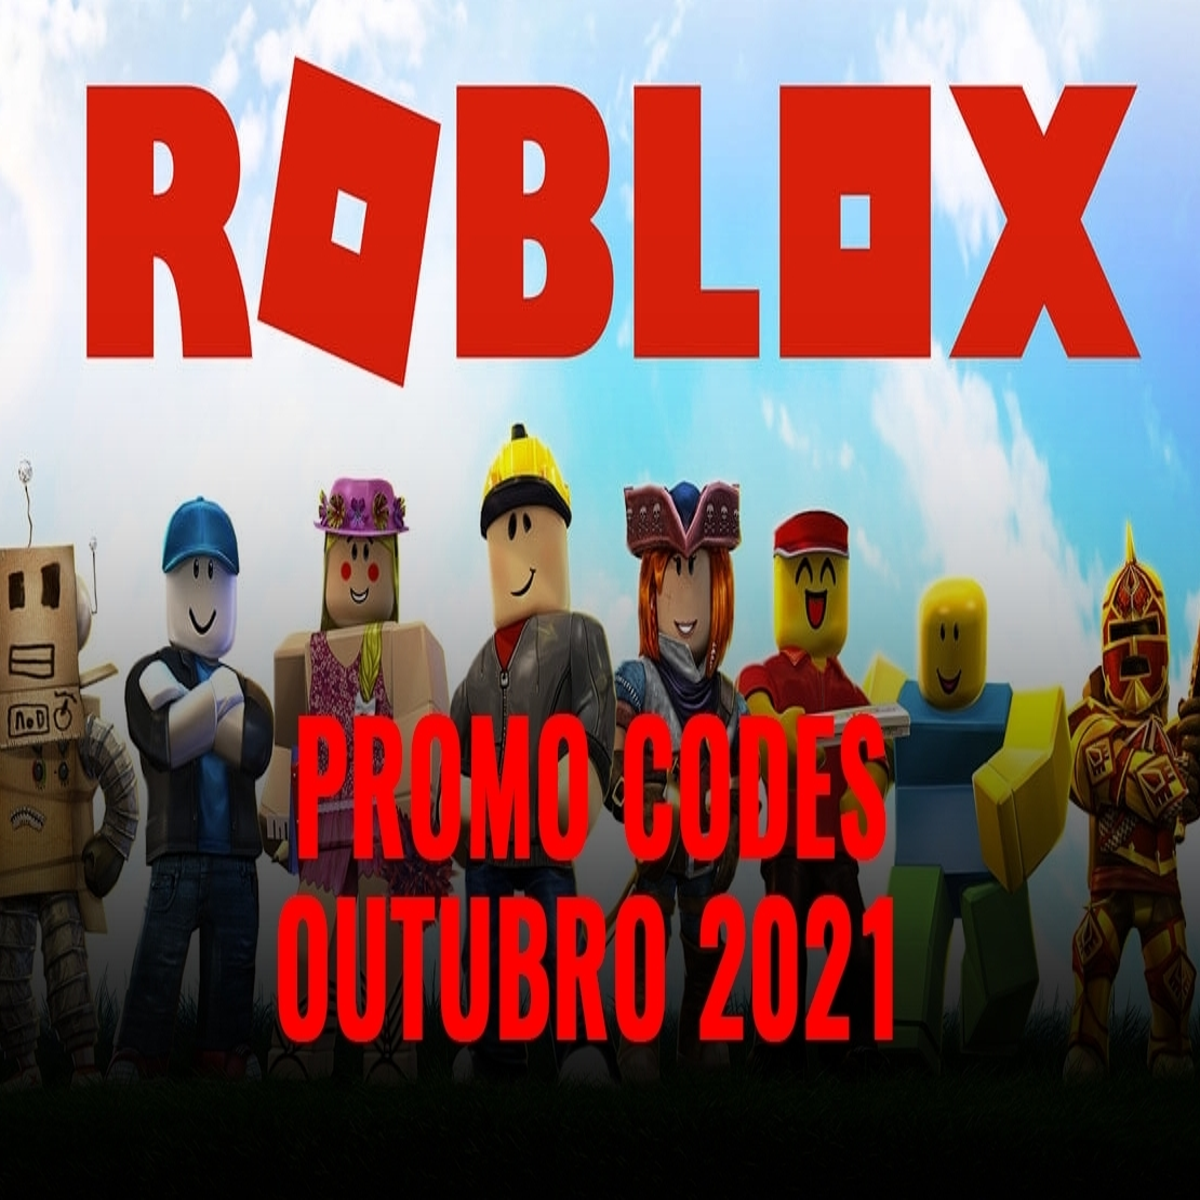 Roblox Maio 2021 Promo Codes - Cosméticos Gratuitos, Roupas, Itens